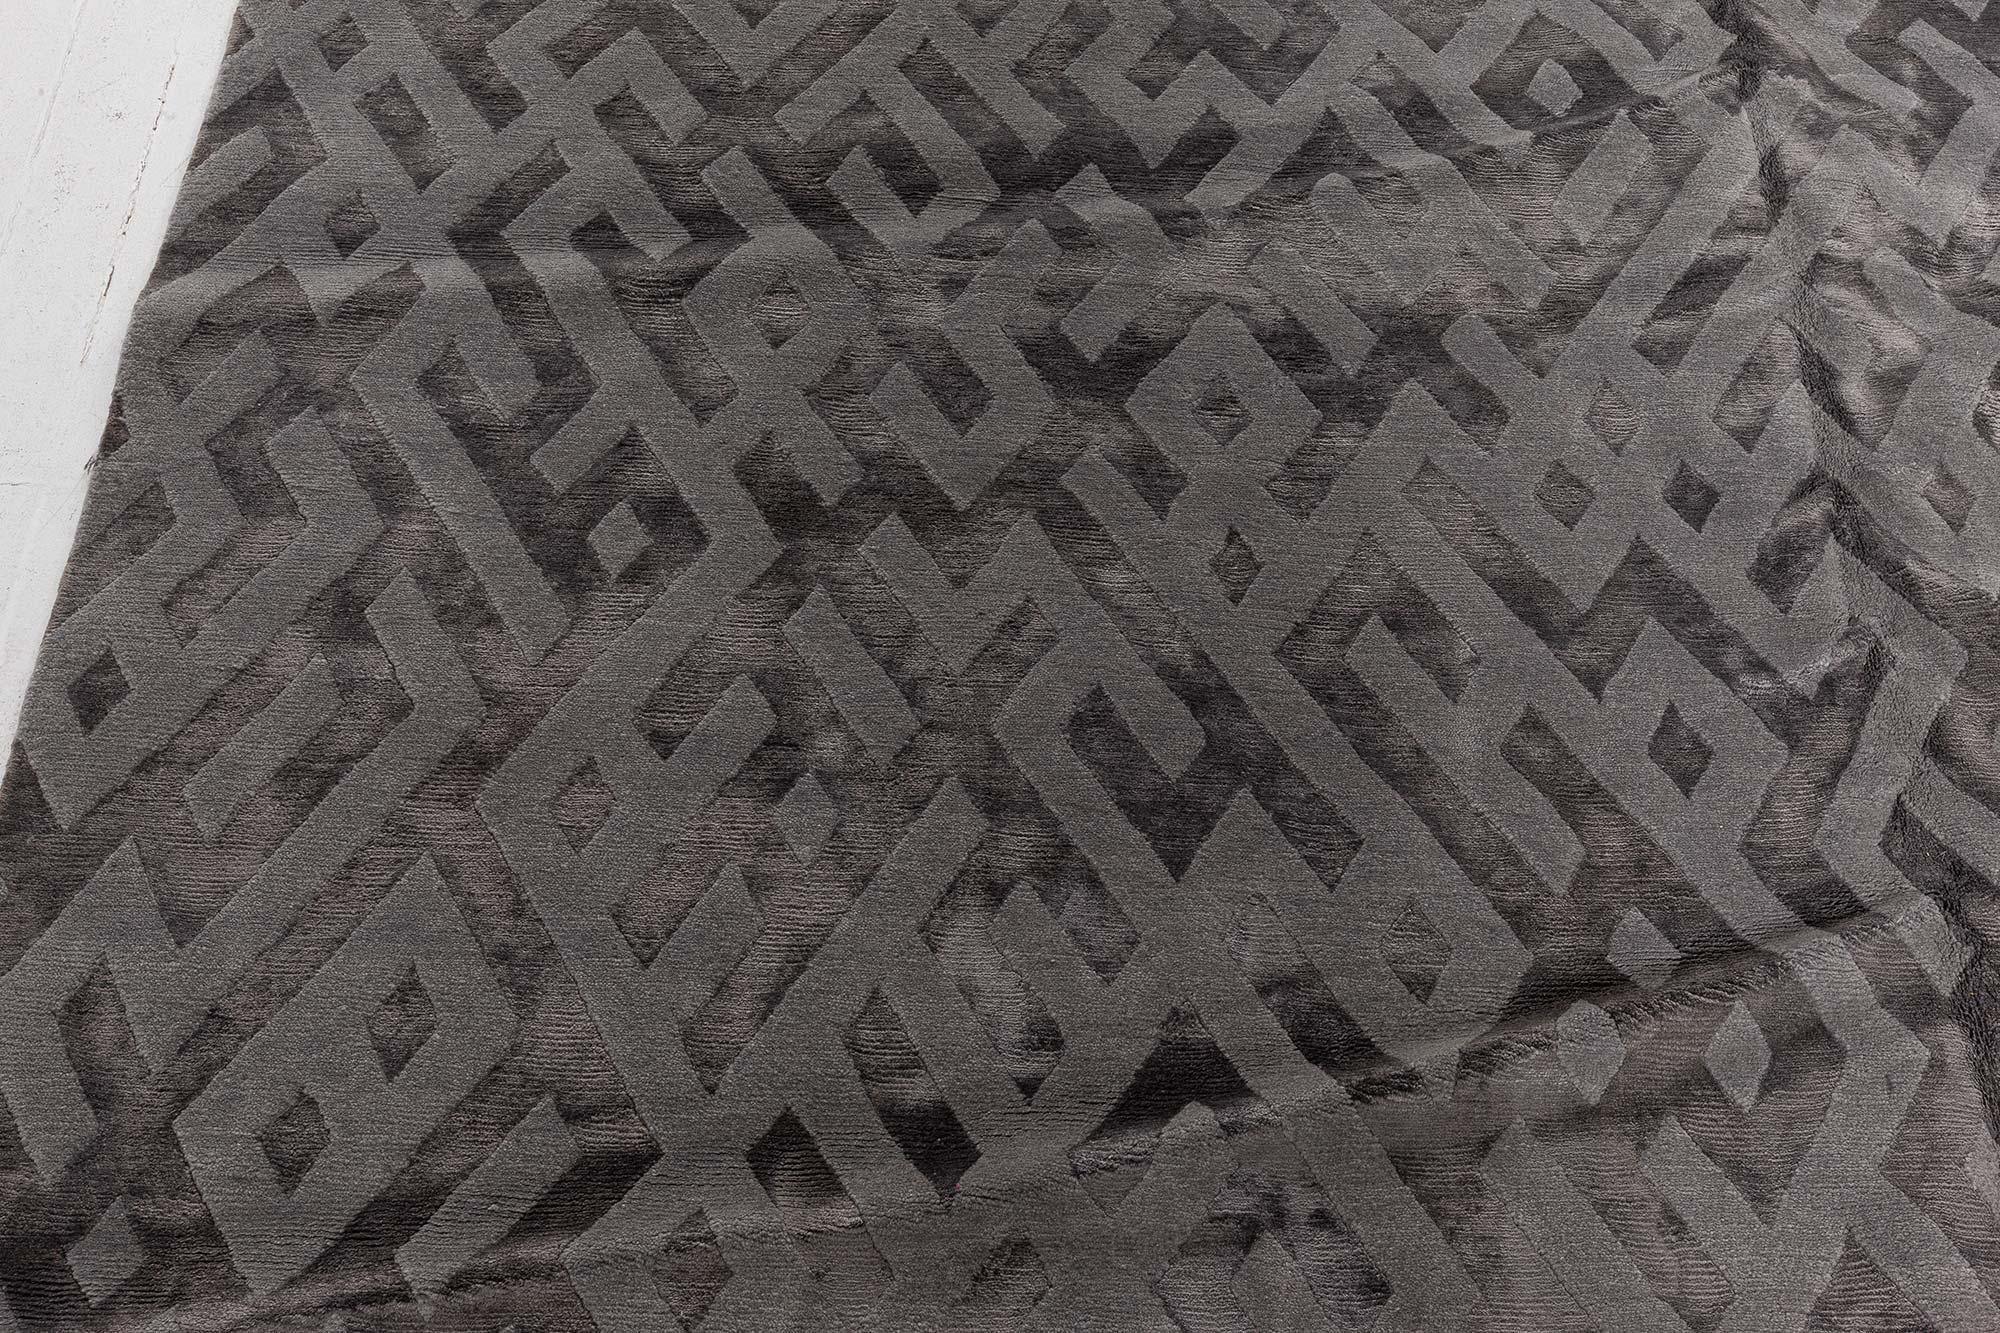 Modern Tibetan Geometric Gray Handmade Silk Rug by Doris Leslie Blau
Size: 8'0